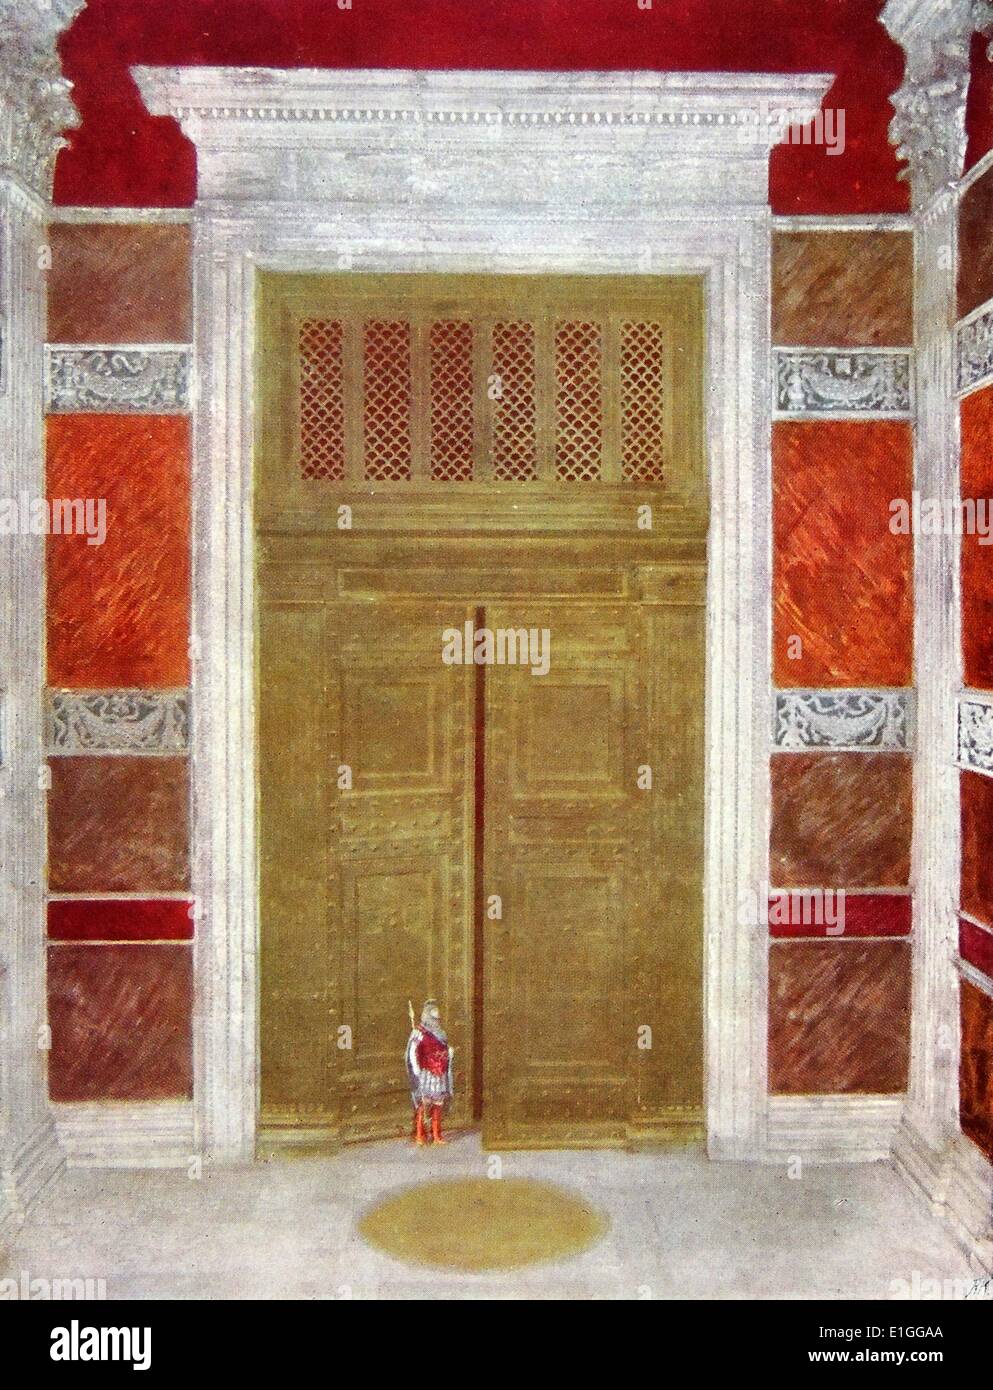 Farbige Skizze einer restaurierten Tür des Pantheons. Die Skizze zeigt einen römischen Soldat bewacht die Tür. Stockfoto